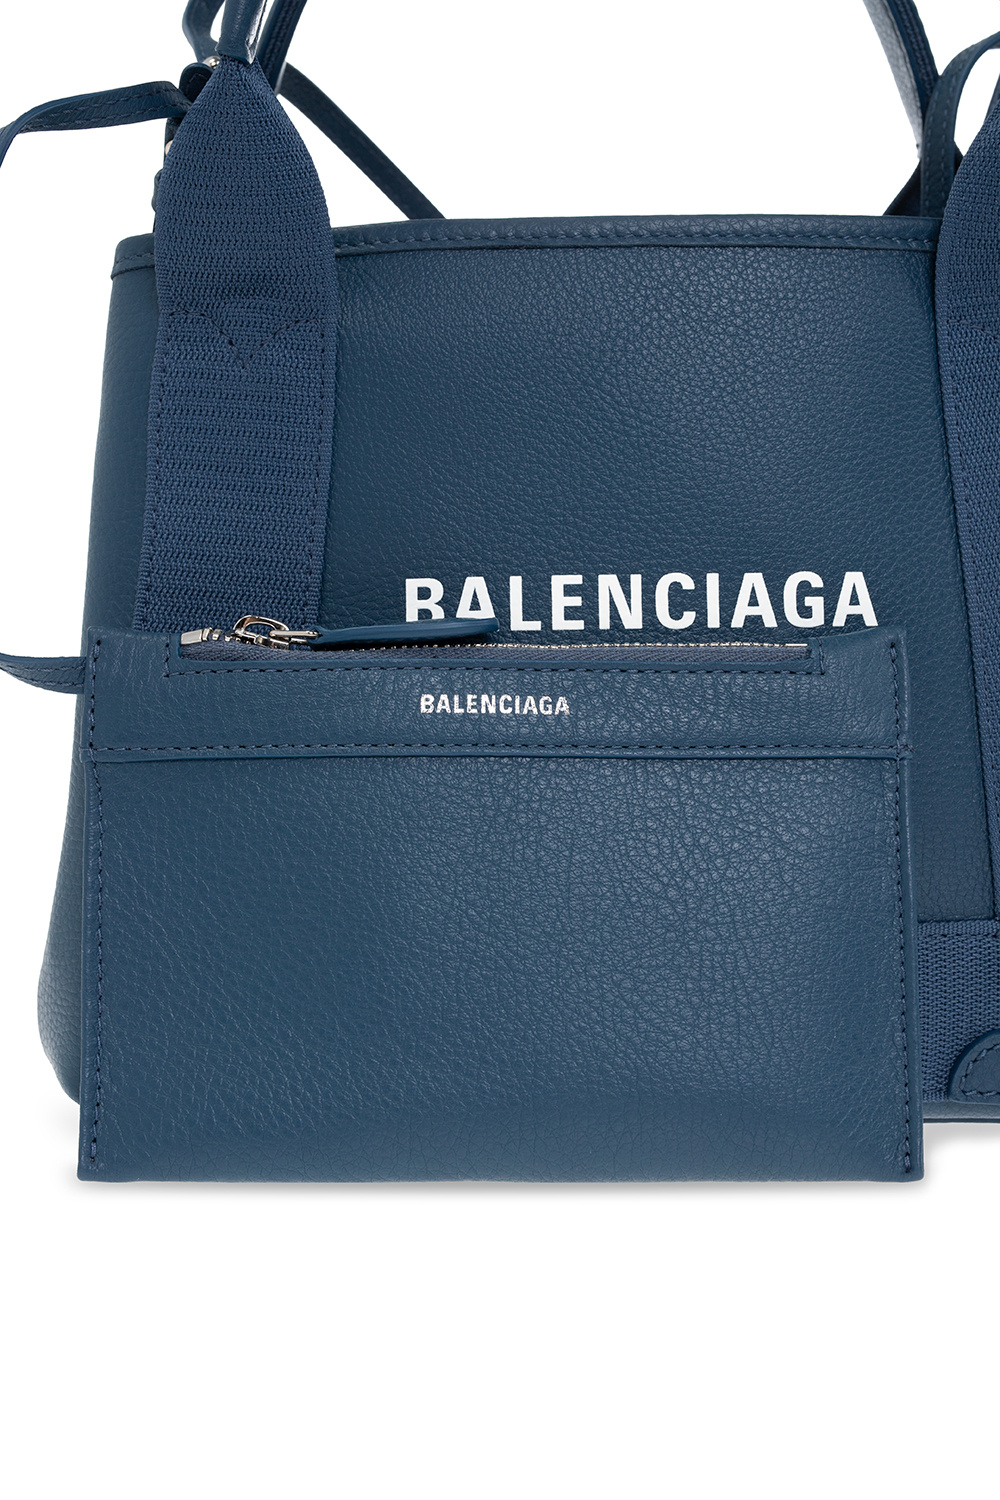 Balenciaga ‘Navy XS Cabas’ shoulder bag